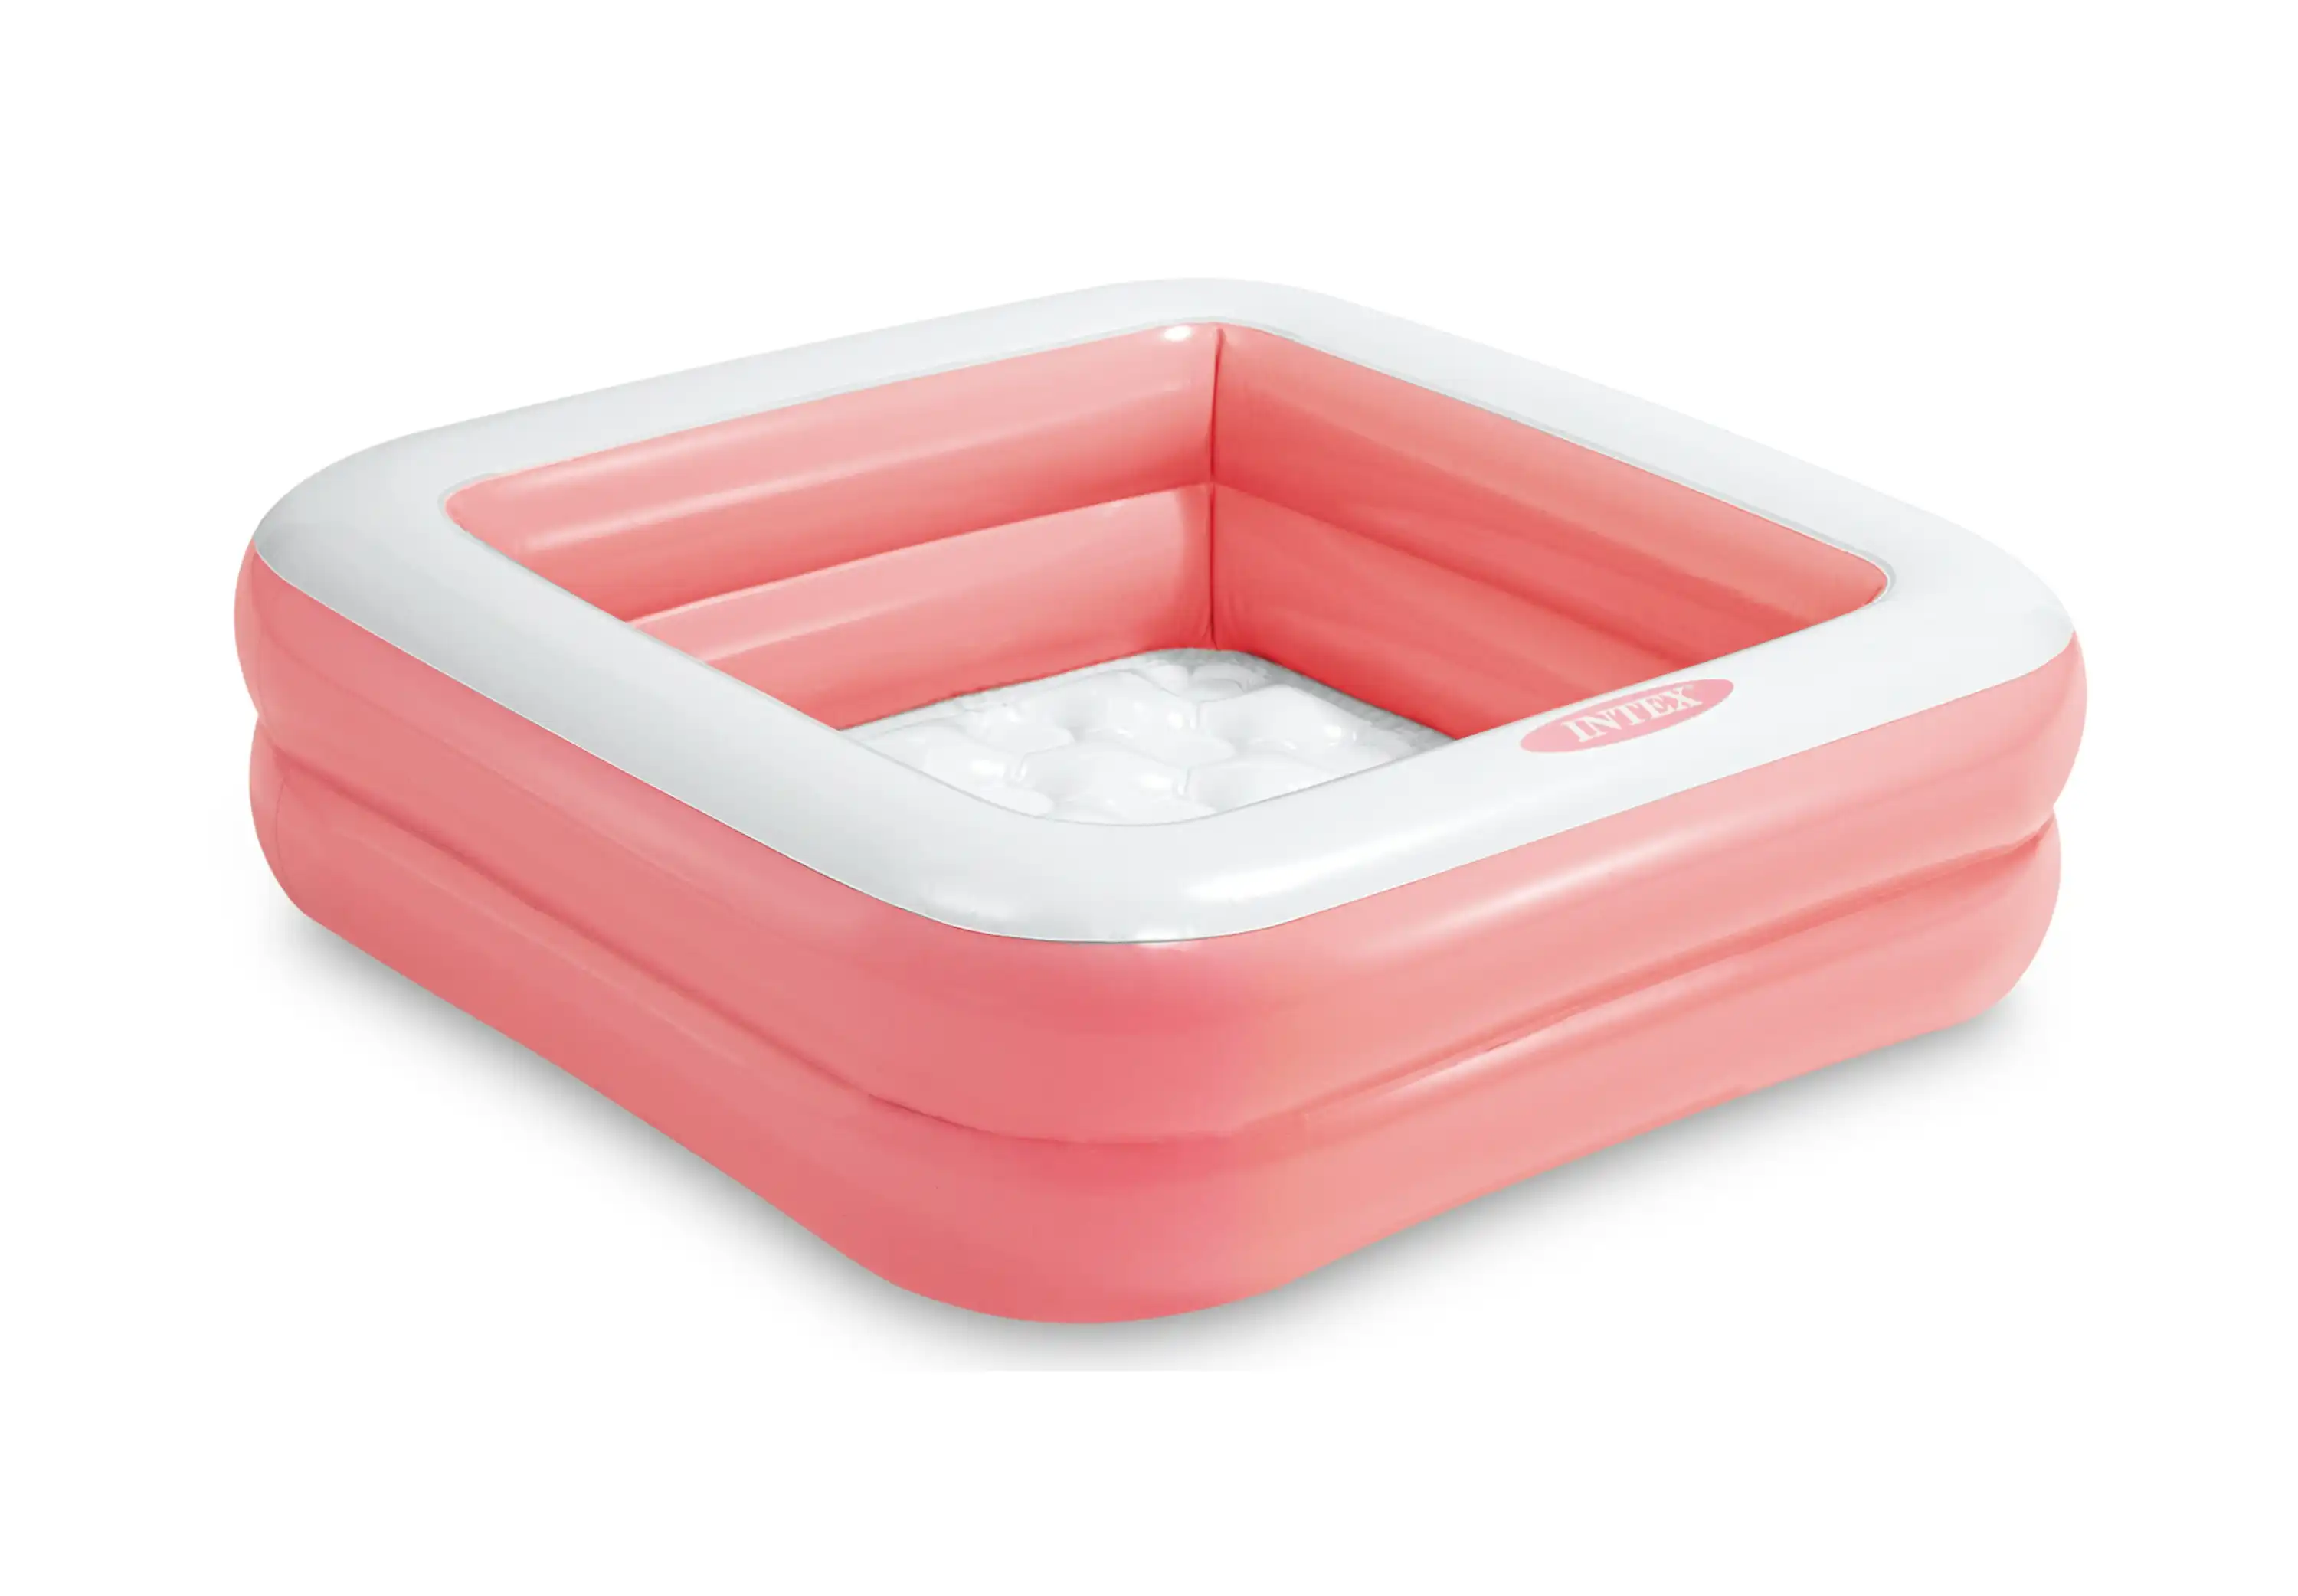 Intex Play Box Pool Pink 57100